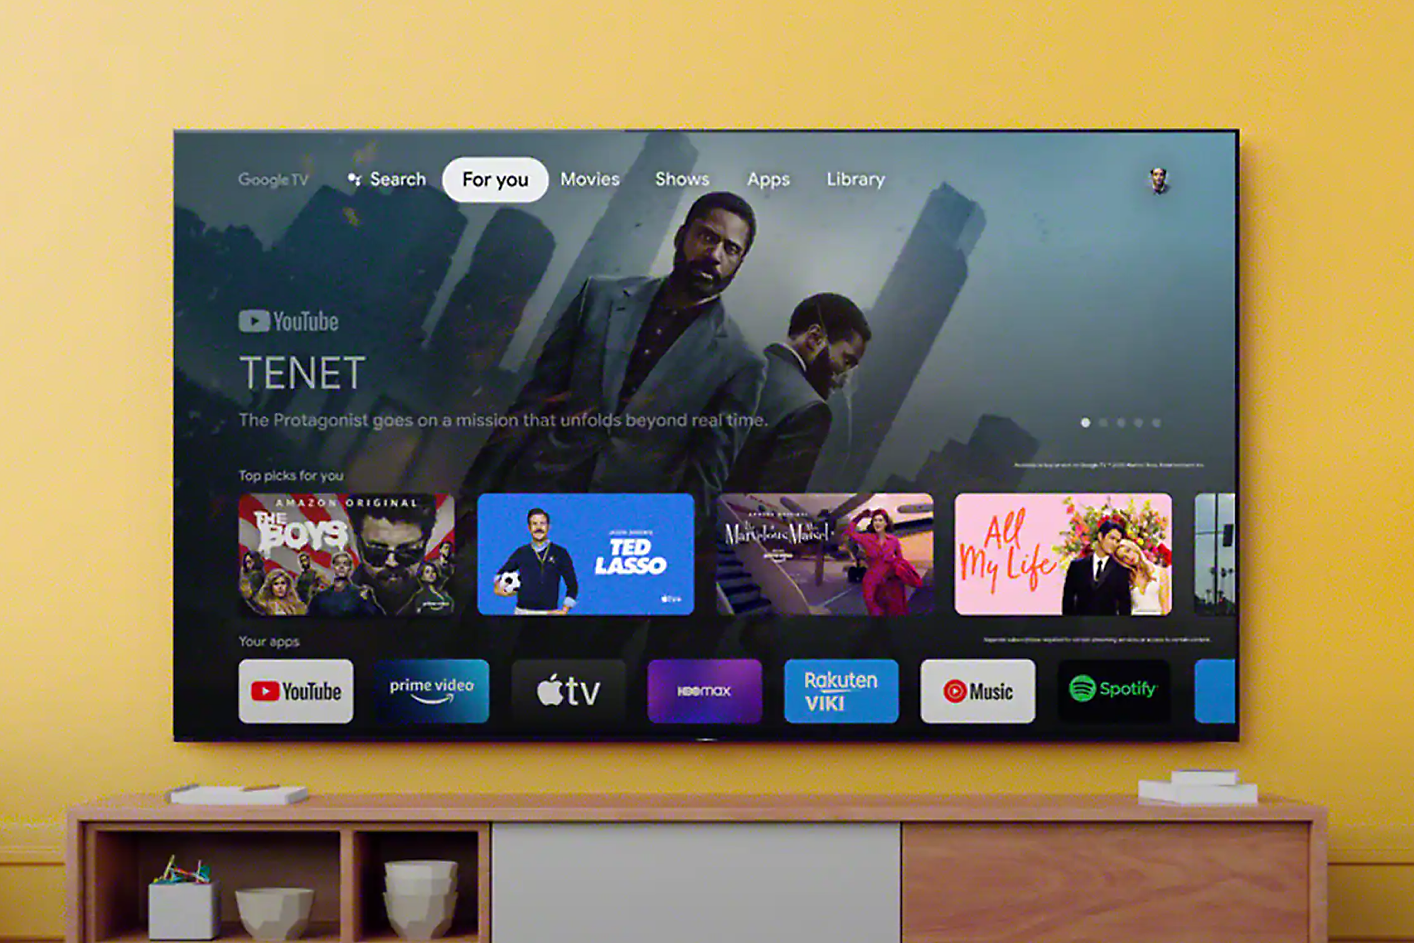 Una pantalla de televisor muestra una interfaz con navegación de búsqueda y una selección de aplicaciones, con una escena de “Tenet” en el fondo.